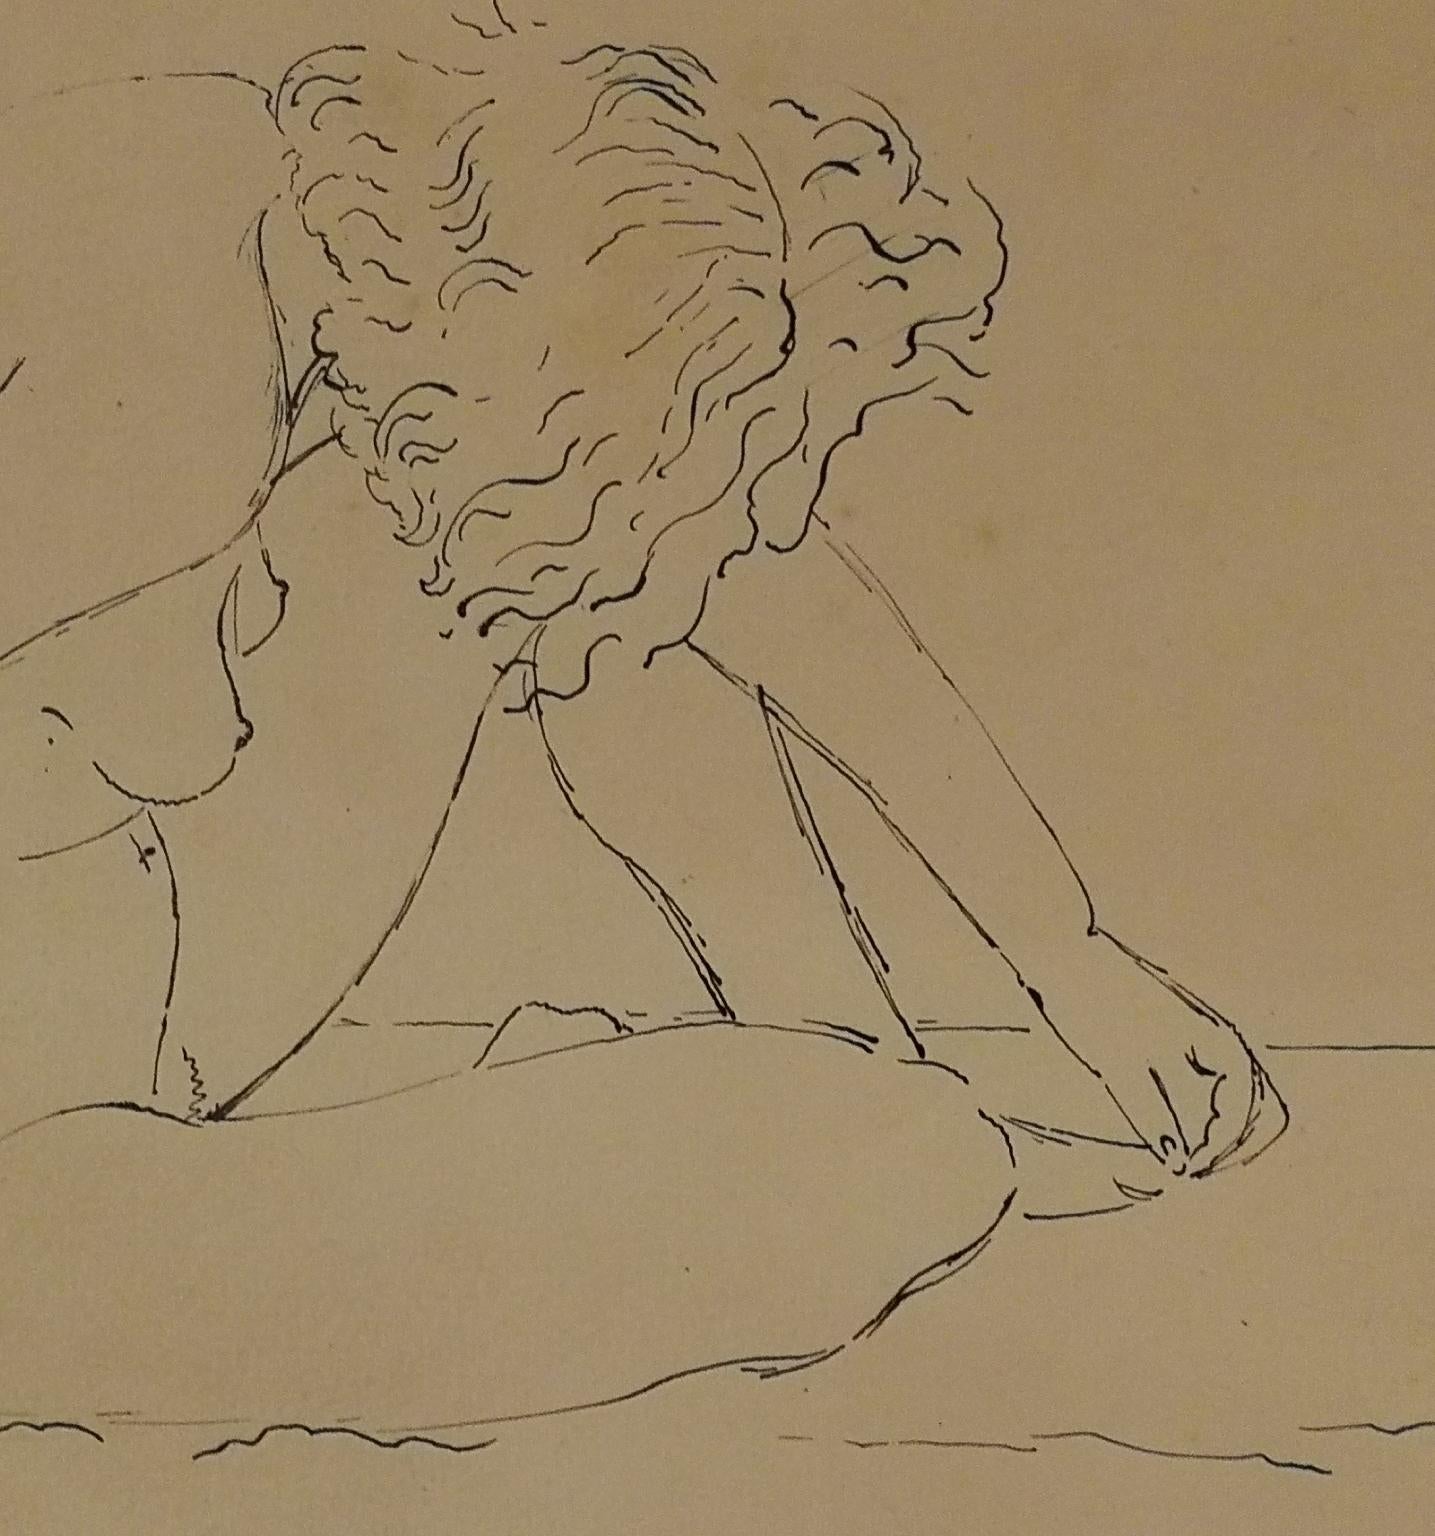 Le dessin, signé dans le coin inférieur droit par Colacicchi, est une étude à l'encre sur papier d'une femme nue, représentée alors qu'elle est repliée sur elle-même, avec la tête couchée, touchant son orteil.
On peut se référer aux études pour la